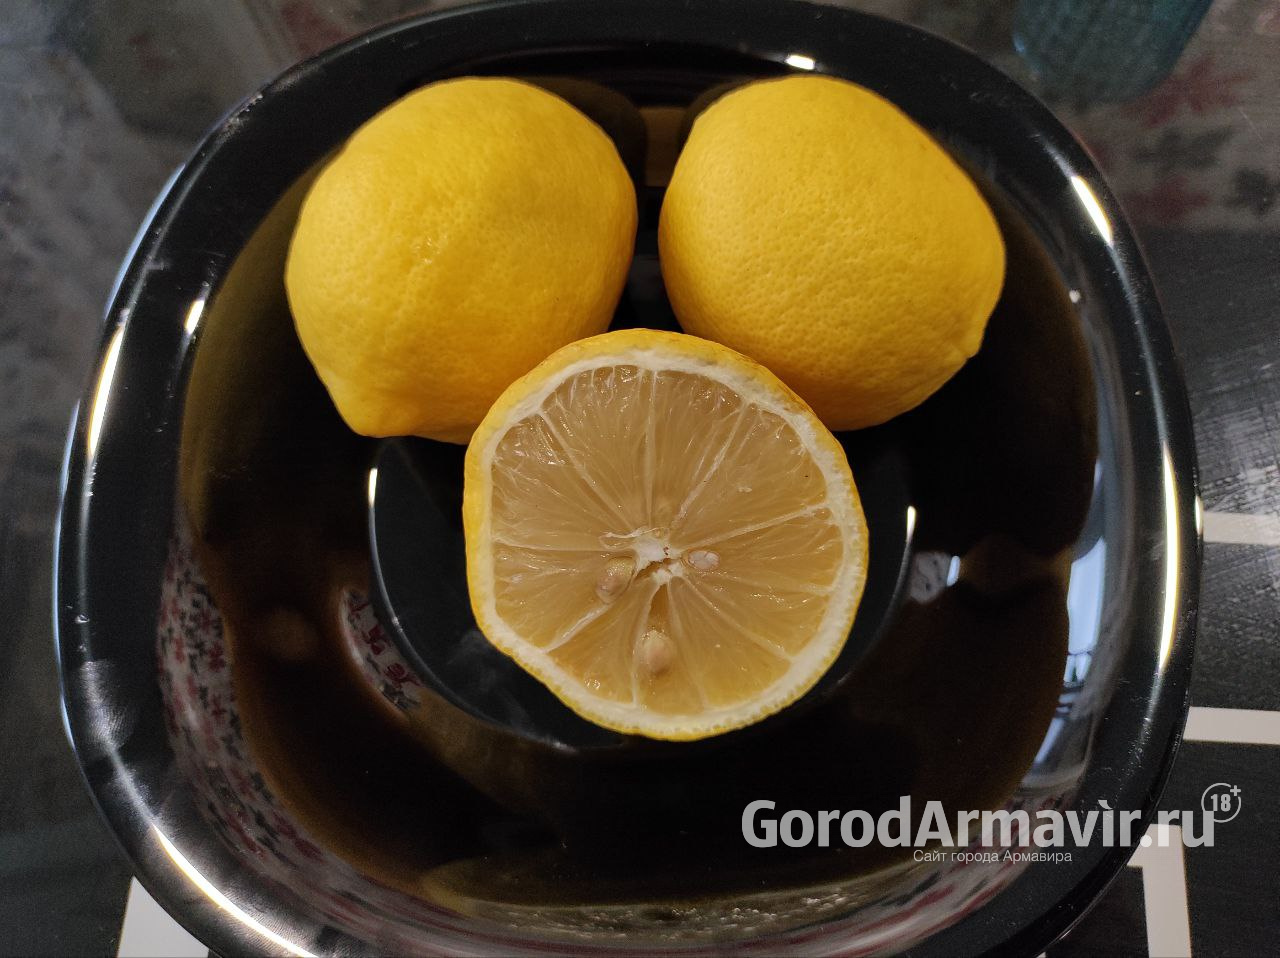 До 2027 года в Армавире построят завод по производству лимонной кислоты стоимостью 60 млрд руб